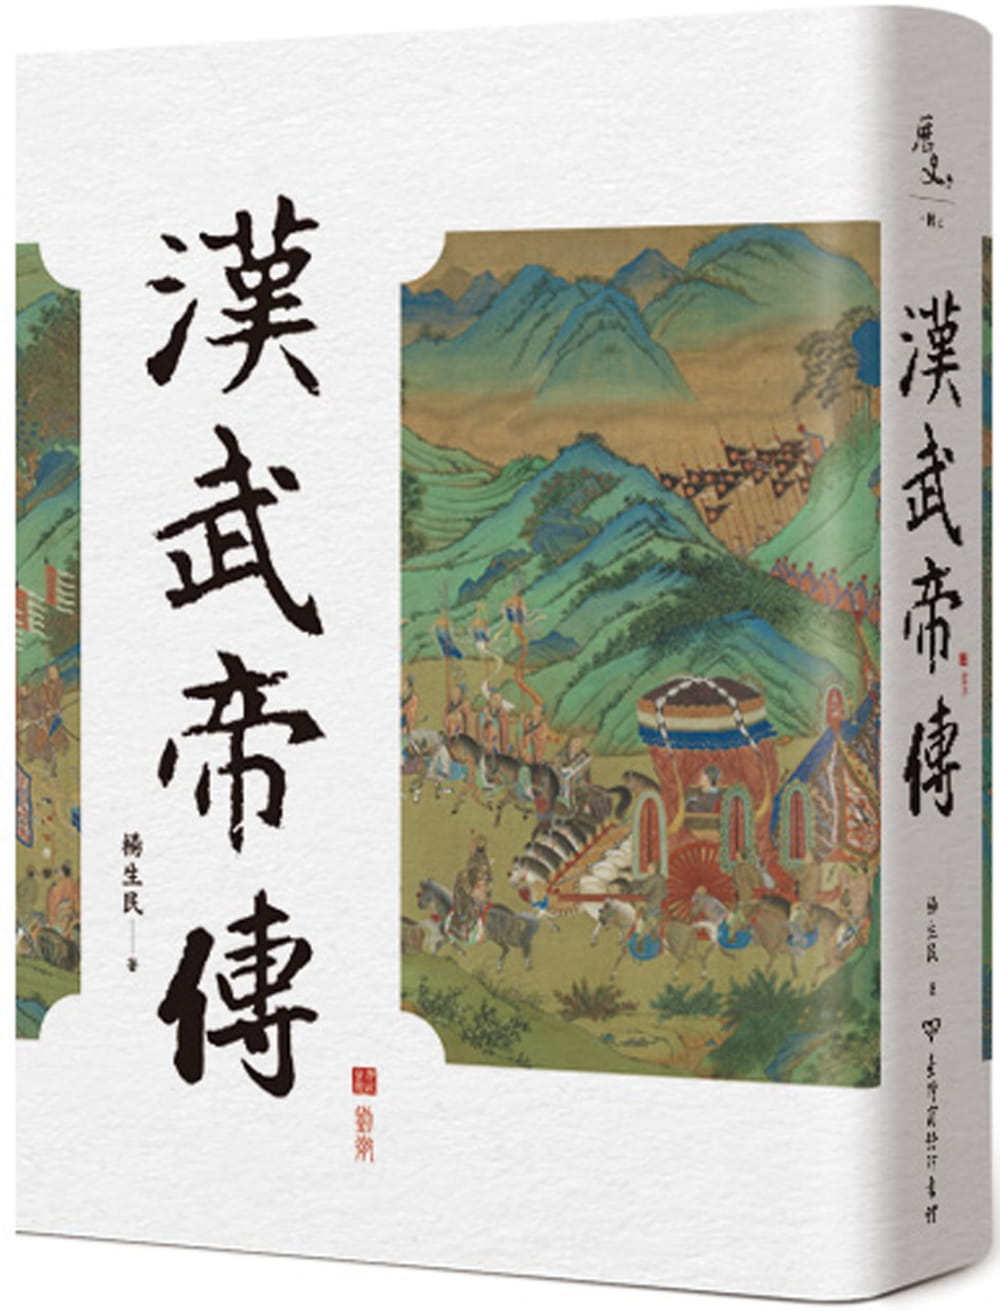 现货 杨生民 汉武帝传(2版) 中国台湾商务 原版进口书